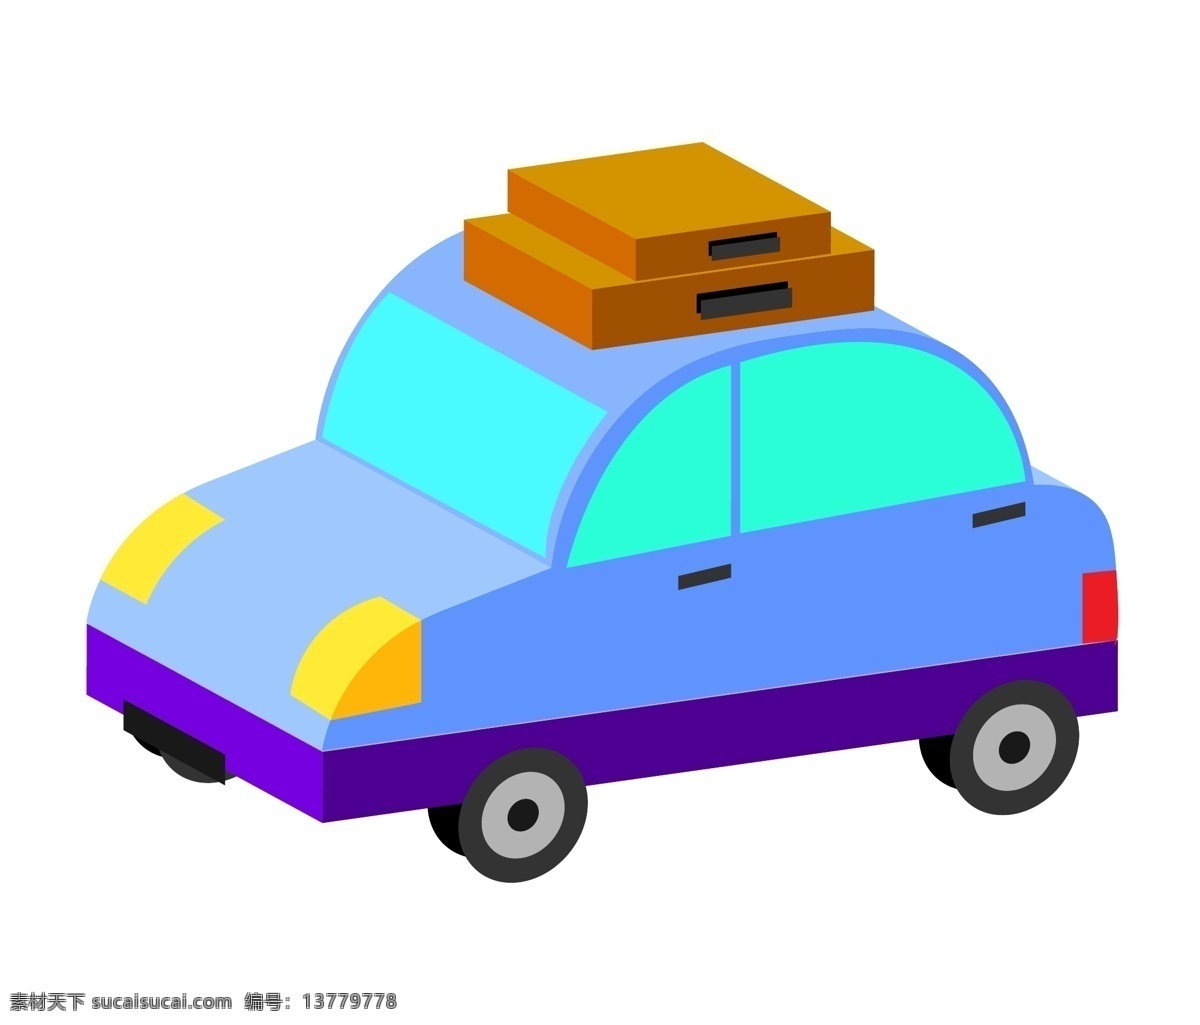 蓝色 汽车装饰 插画 蓝色的汽车 交通汽车 漂亮的汽车 创意汽车 立体汽车 卡通汽车 载客汽车